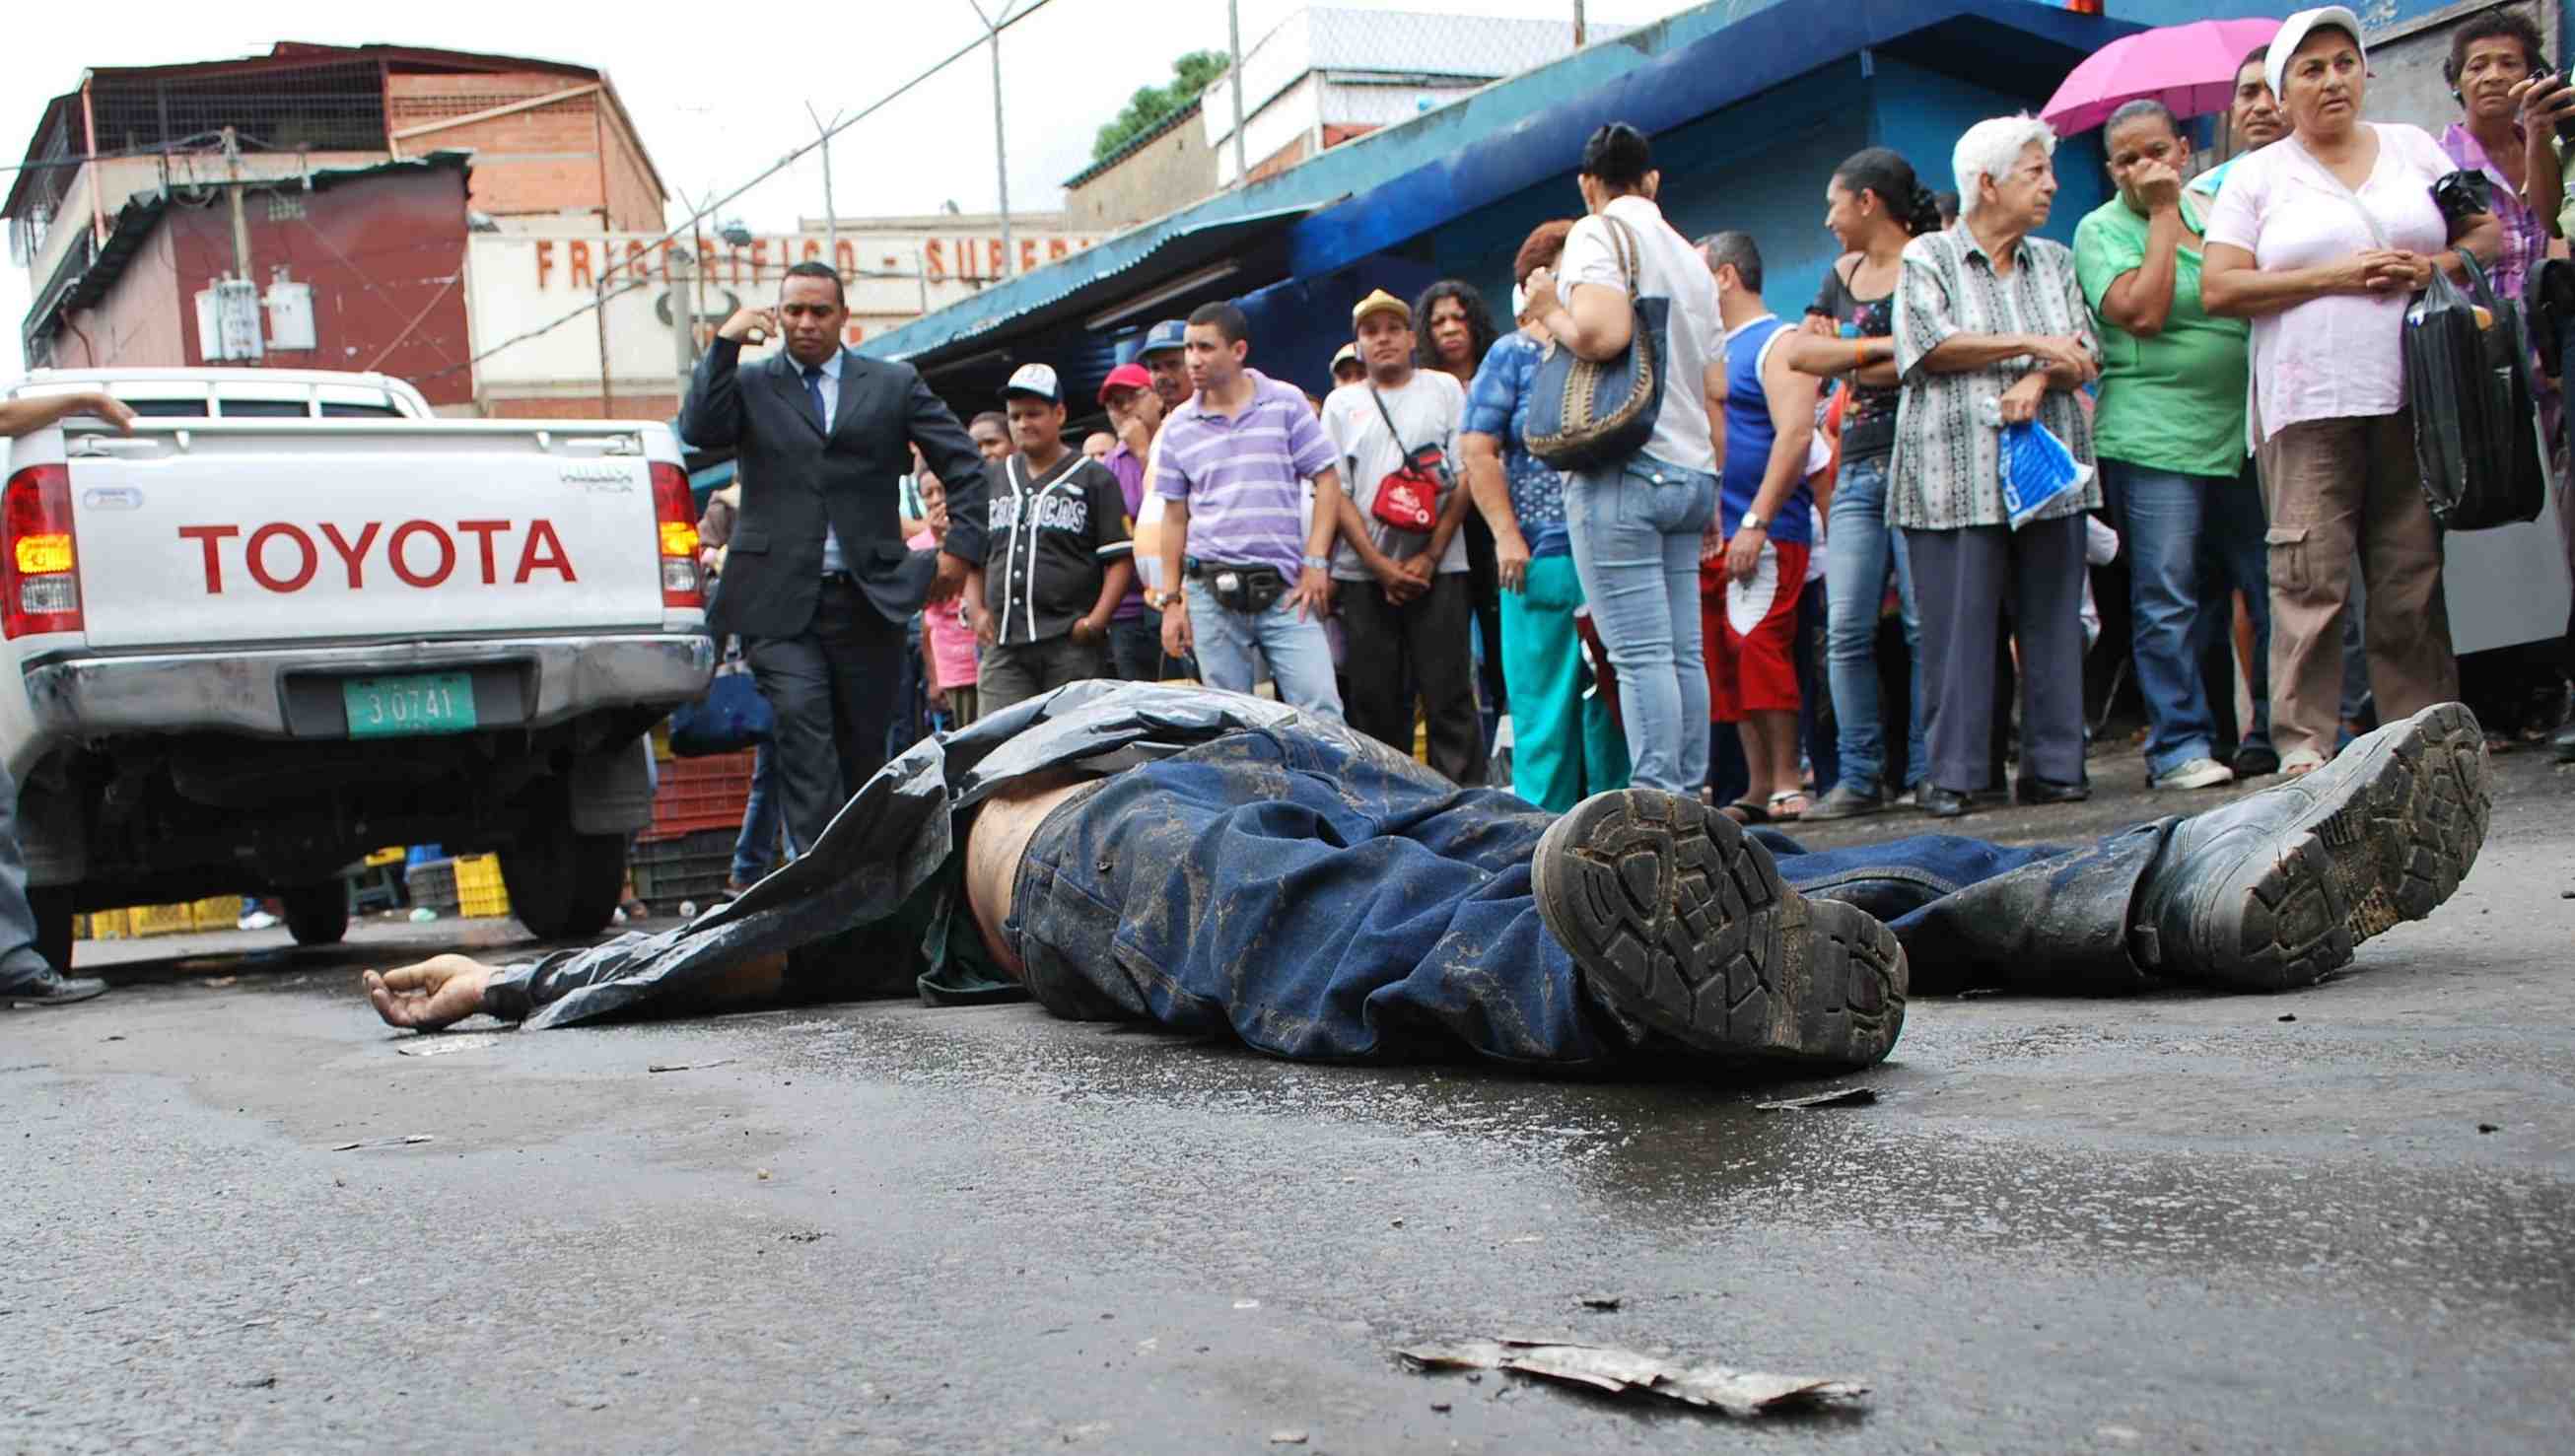 De cada diez muertes en el país, cuatro son por parte de cuerpos responsable de seguridad, según la Organización No Gubernamental (ONG) Caracas Mi Convive